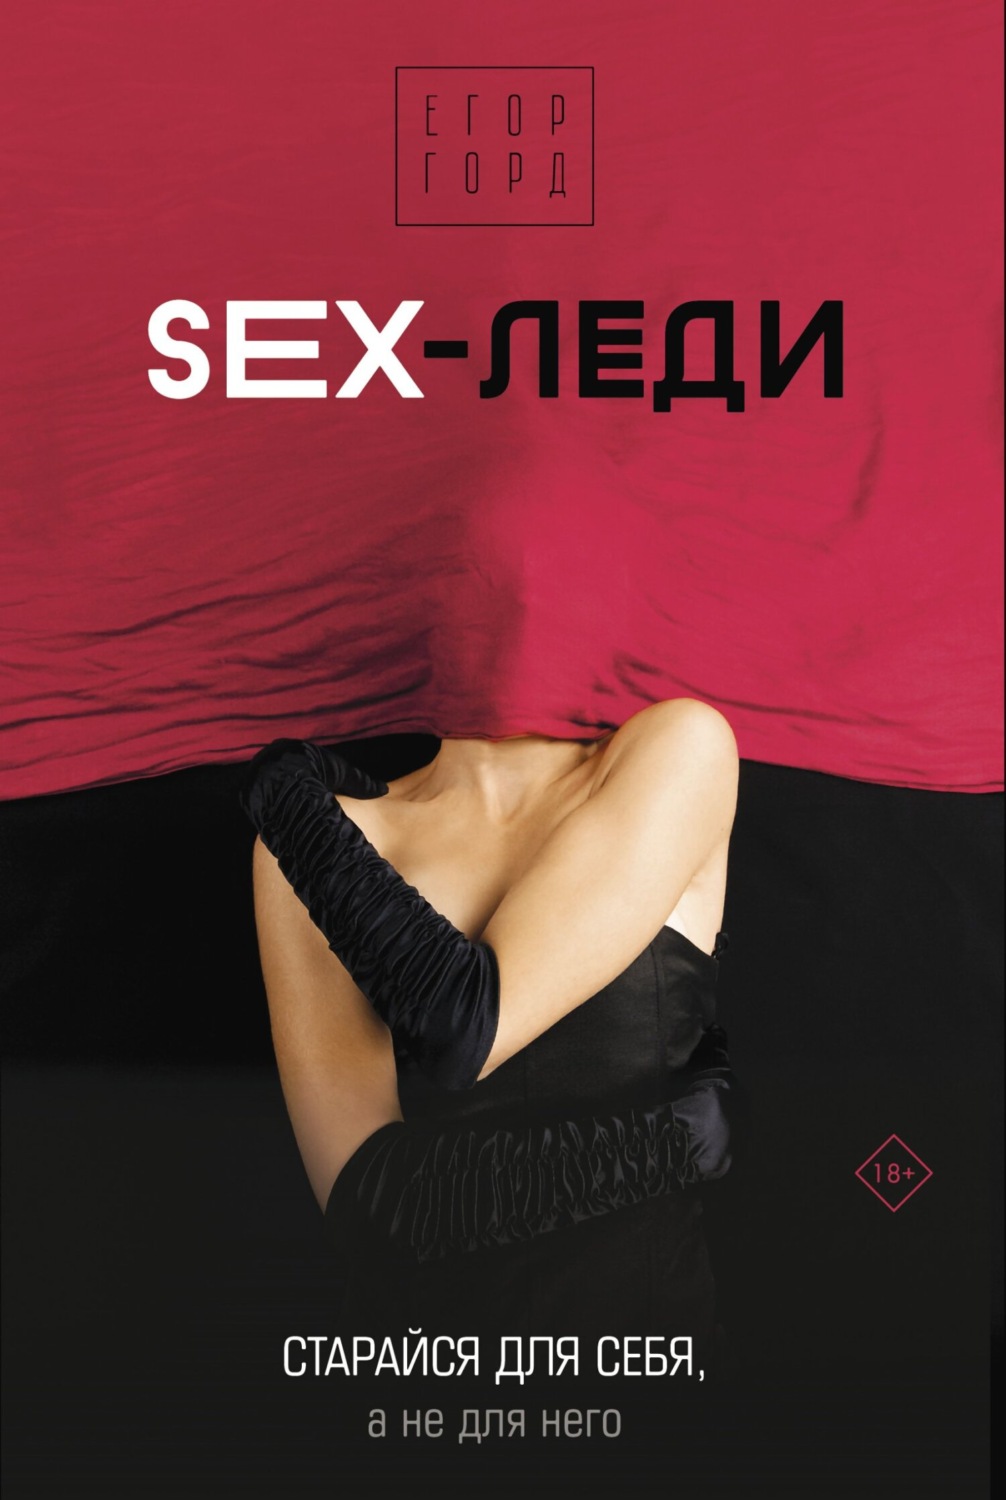 Отзывы о книге «SEX-леди. Старайся для себя, а не для него», рецензии на  книгу Егора Горда, рейтинг в библиотеке Литрес